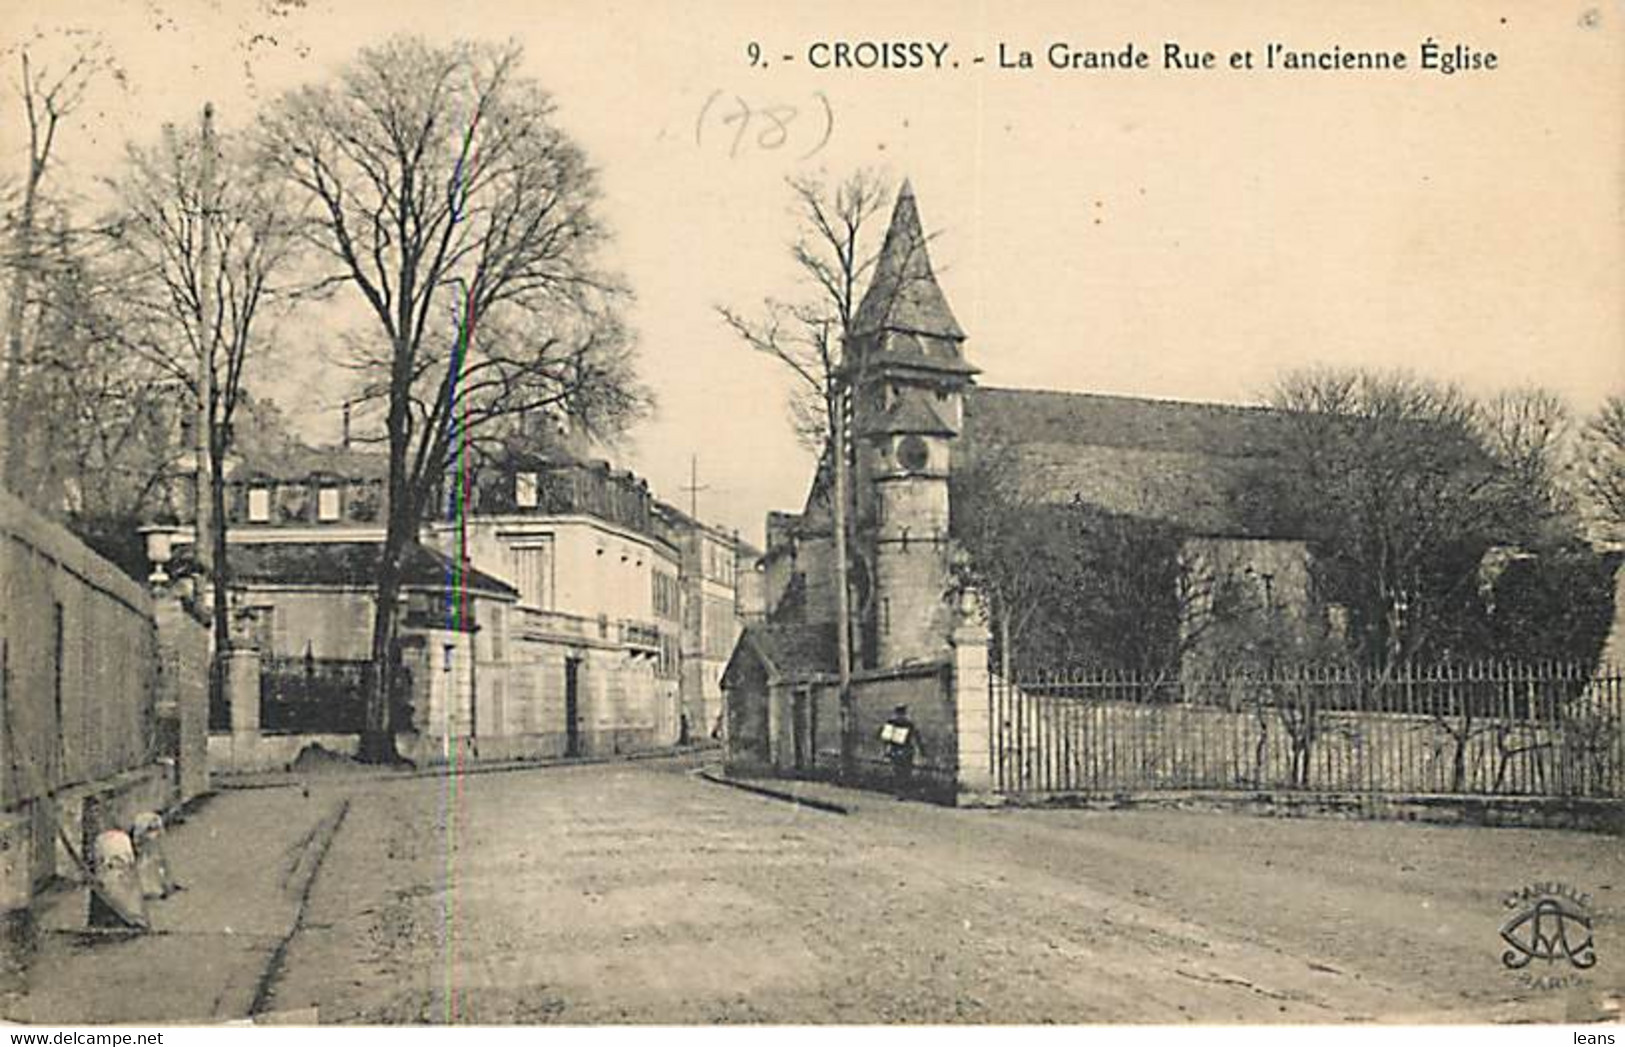 CROISSY - La Grande Rue Et L'ancienne église - L'abeille 9 - Croissy-sur-Seine